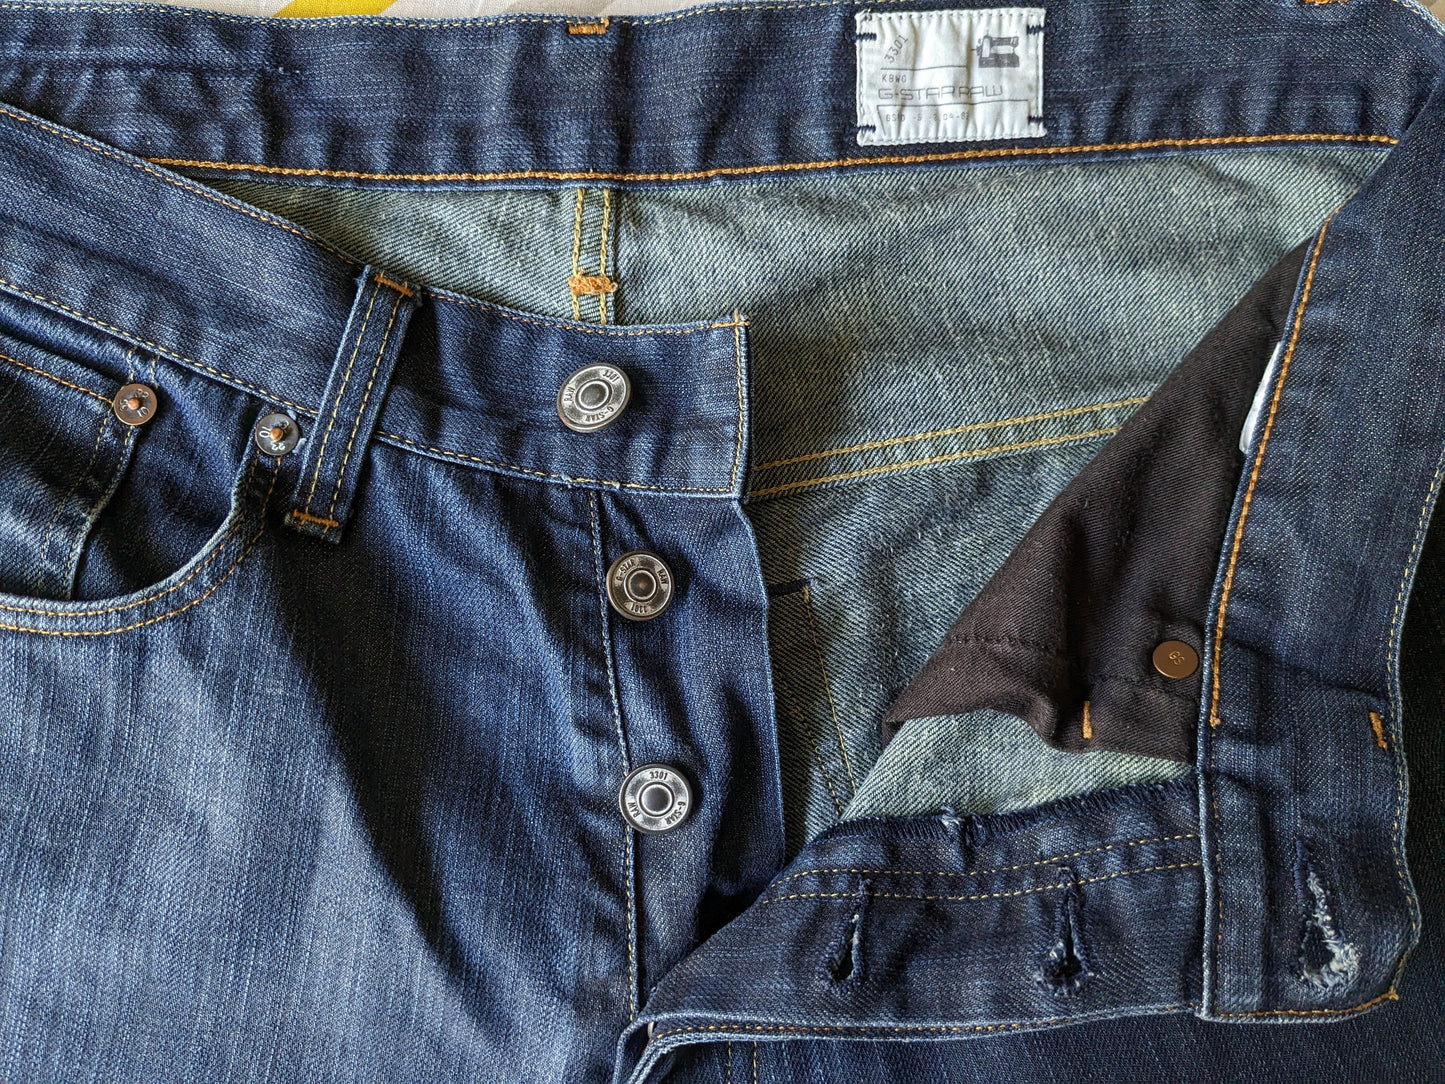 Jeans grezzi g-star. Colorato blu scuro. Taglia W31 - L32.